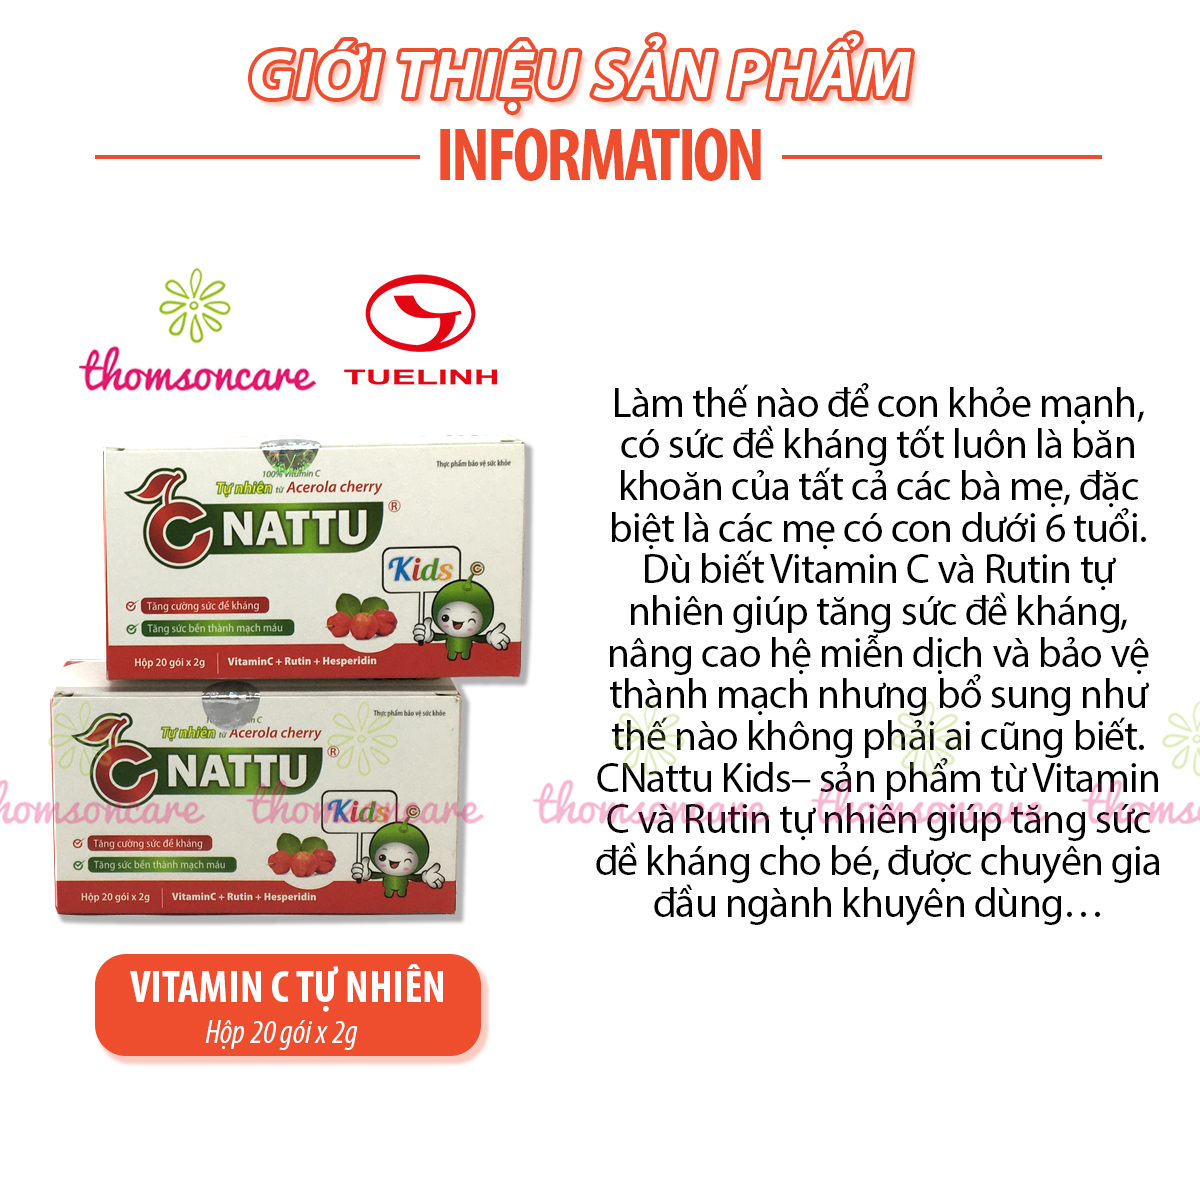 C Nattu Kids - Bổ sung vitaminC, tăng sức đề kháng, giảm chảy máu cam cho bé - Của dược Tuệ Linh,